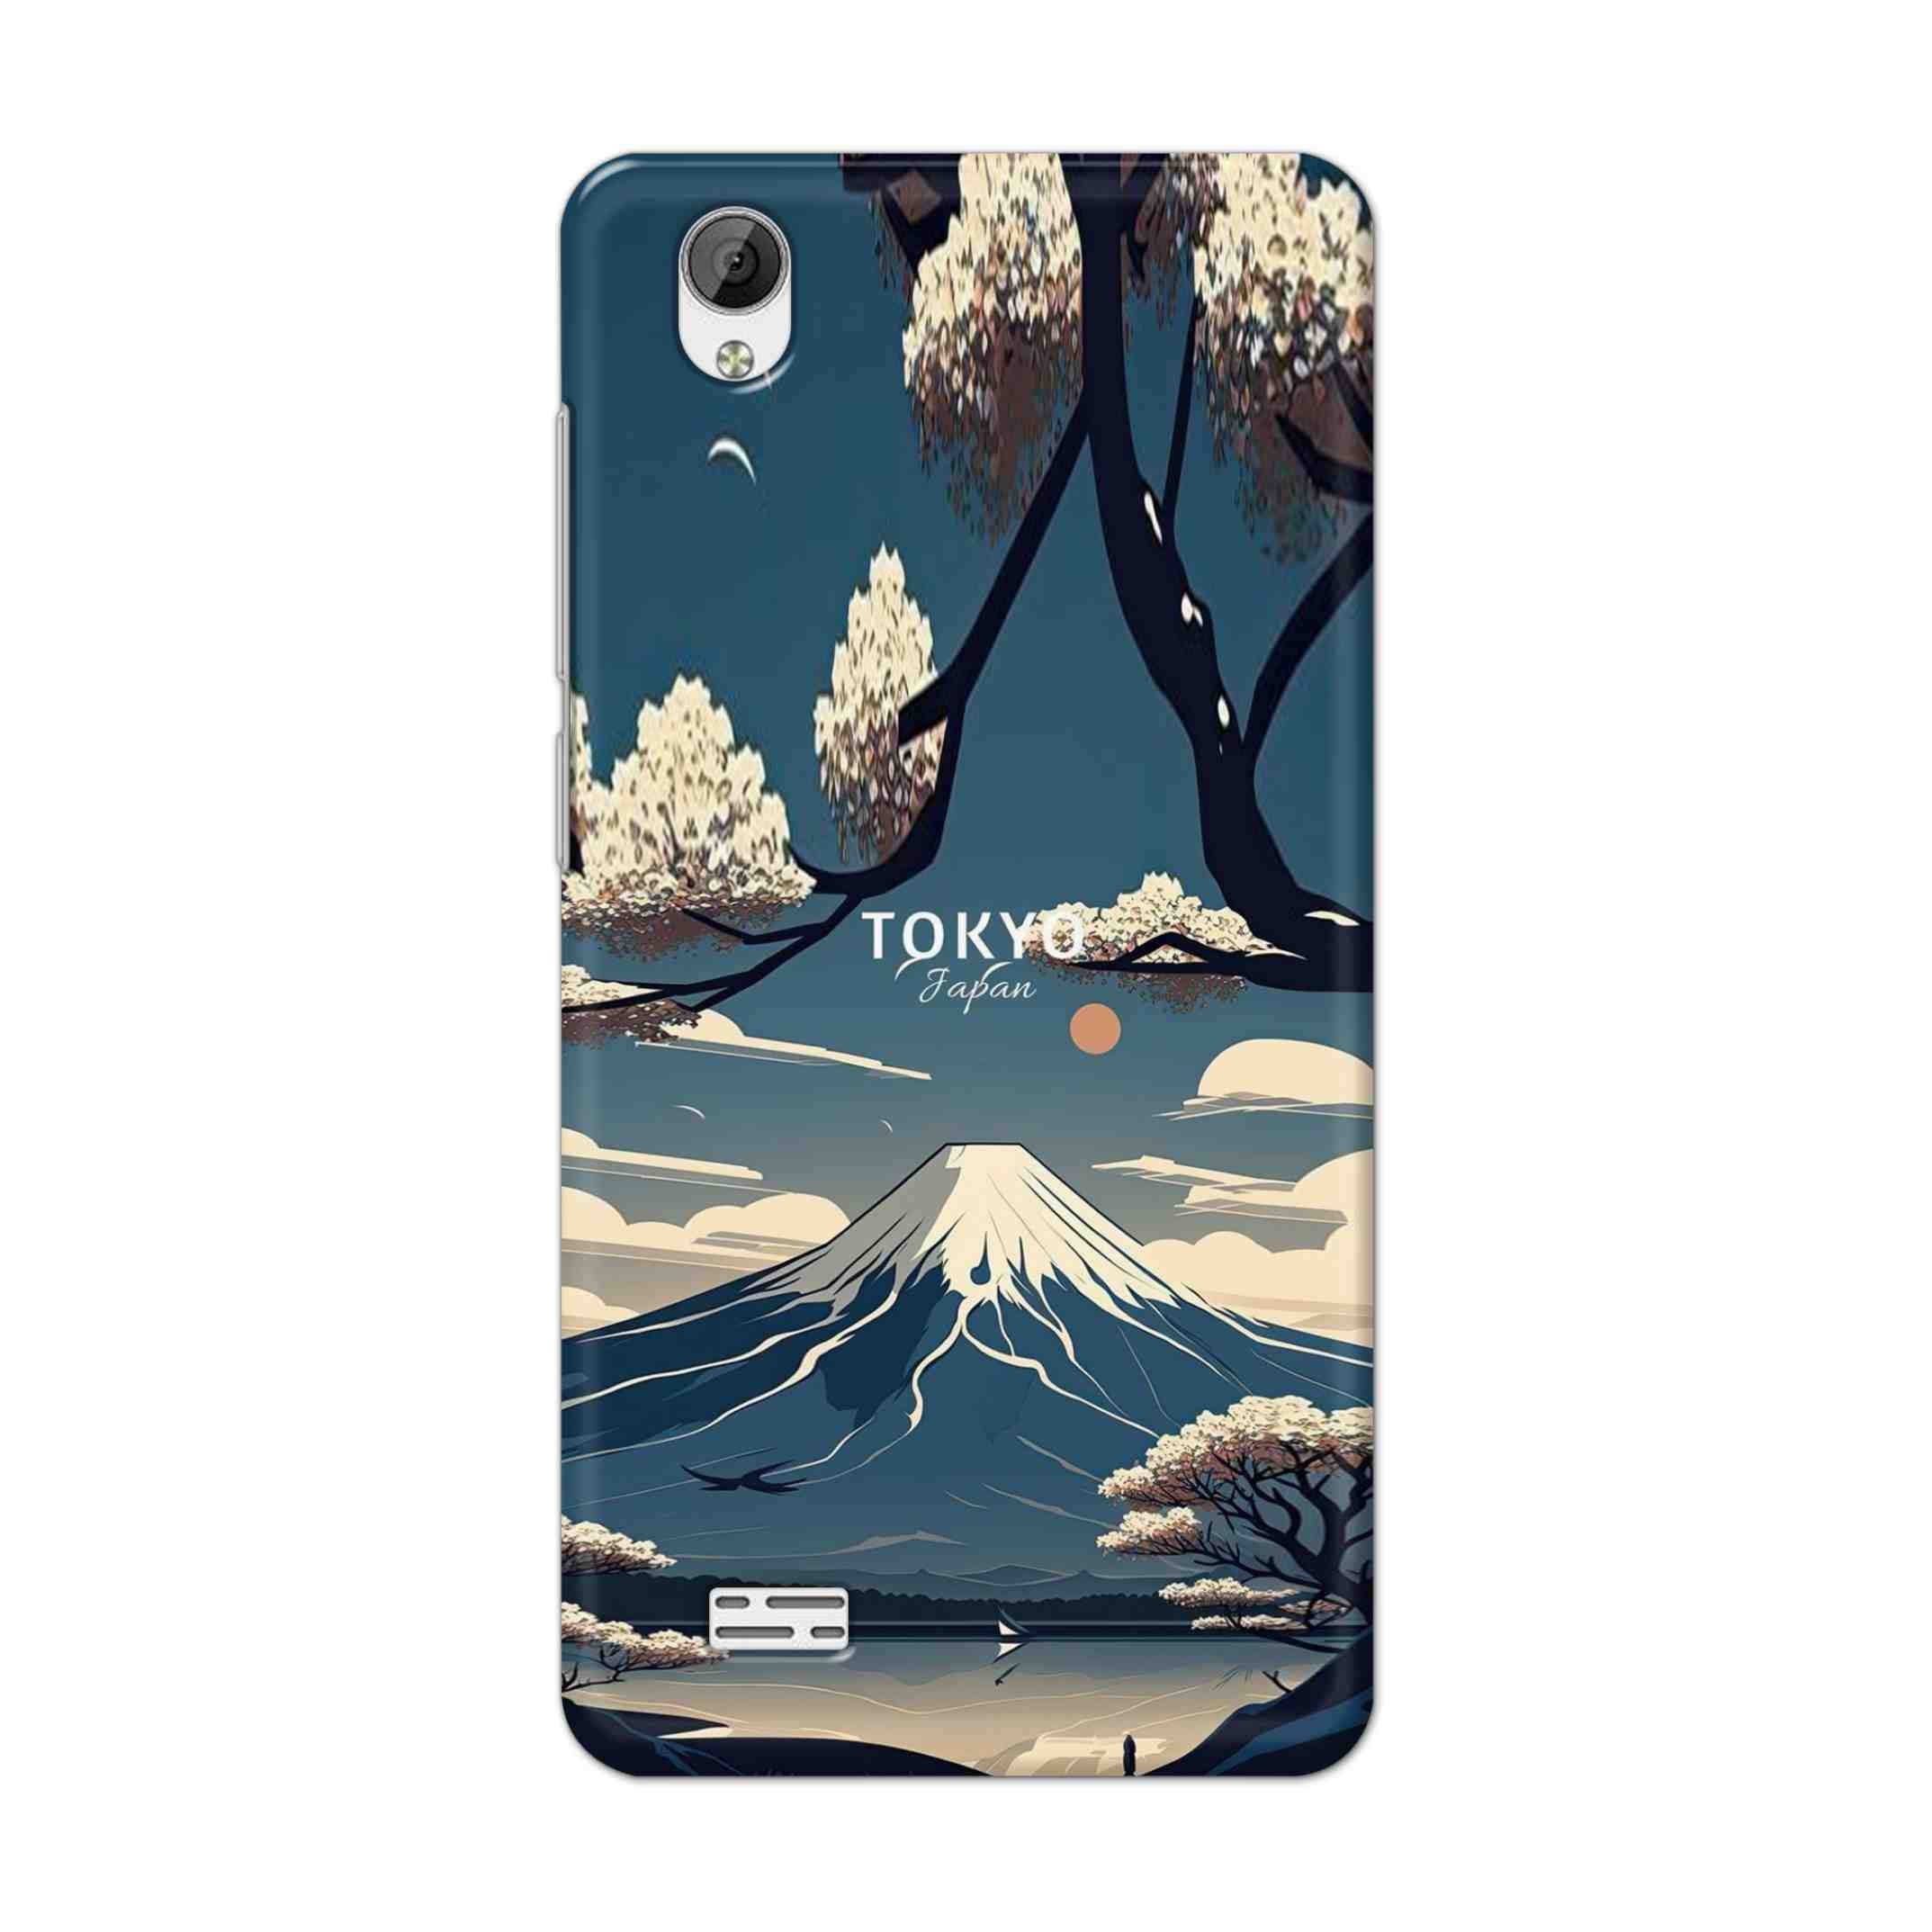 Buy Tokyo Hard Back Mobile Phone Case Cover For Vivo Y31 Online